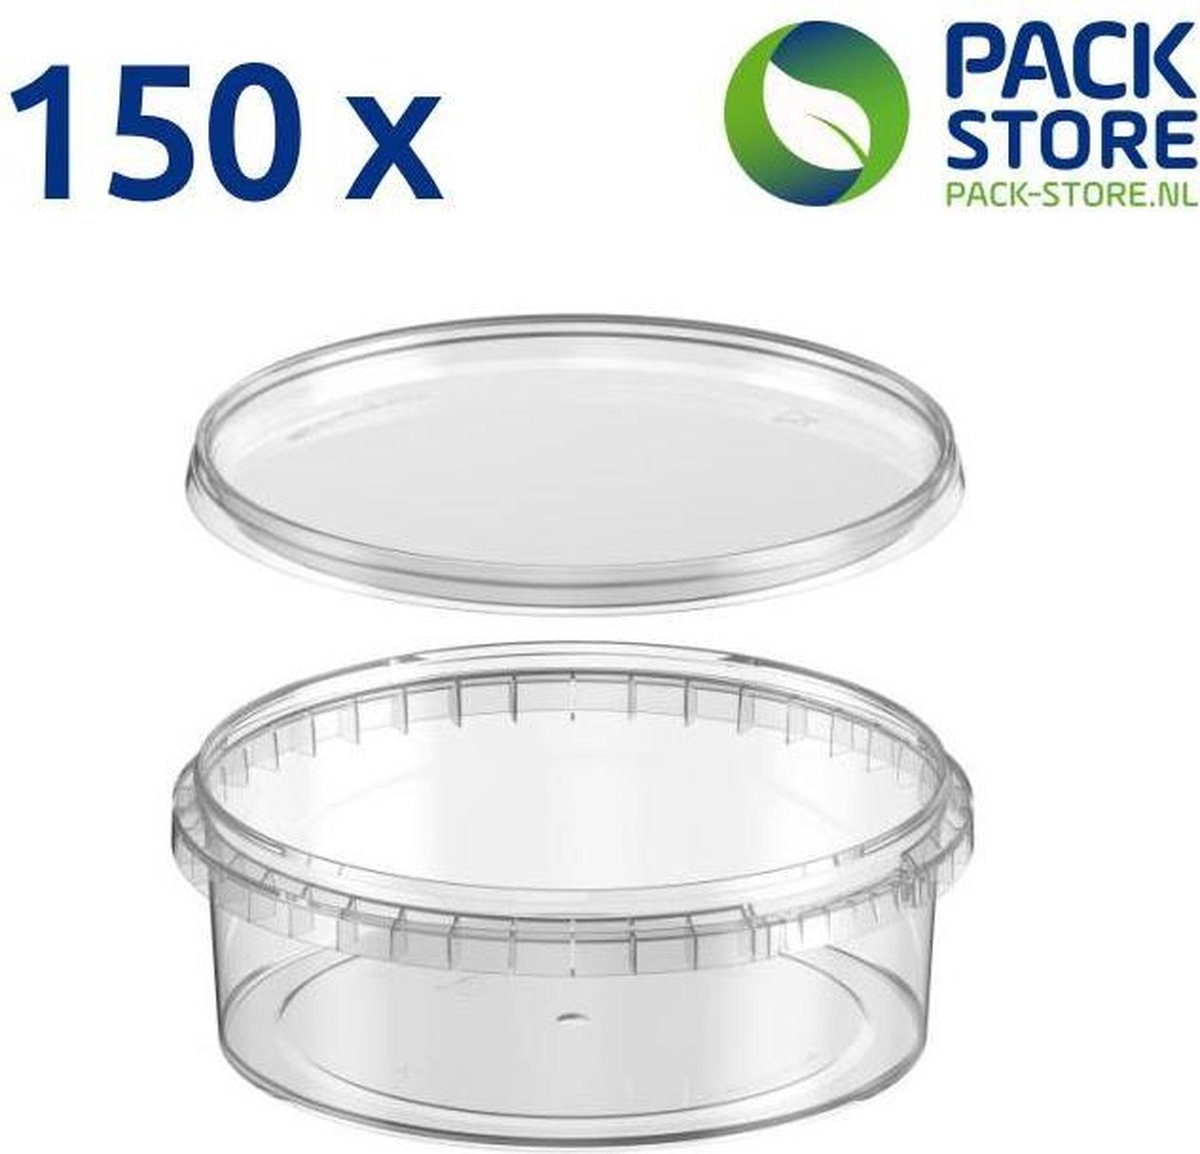 150 x plastic bakjes met deksel - 500 ml - ø146mm - vershoudbakjes - meal prep bakjes - rond - transparant - geschikt voor diepvries, magnetron en vaatwasser - Nederlandse producent